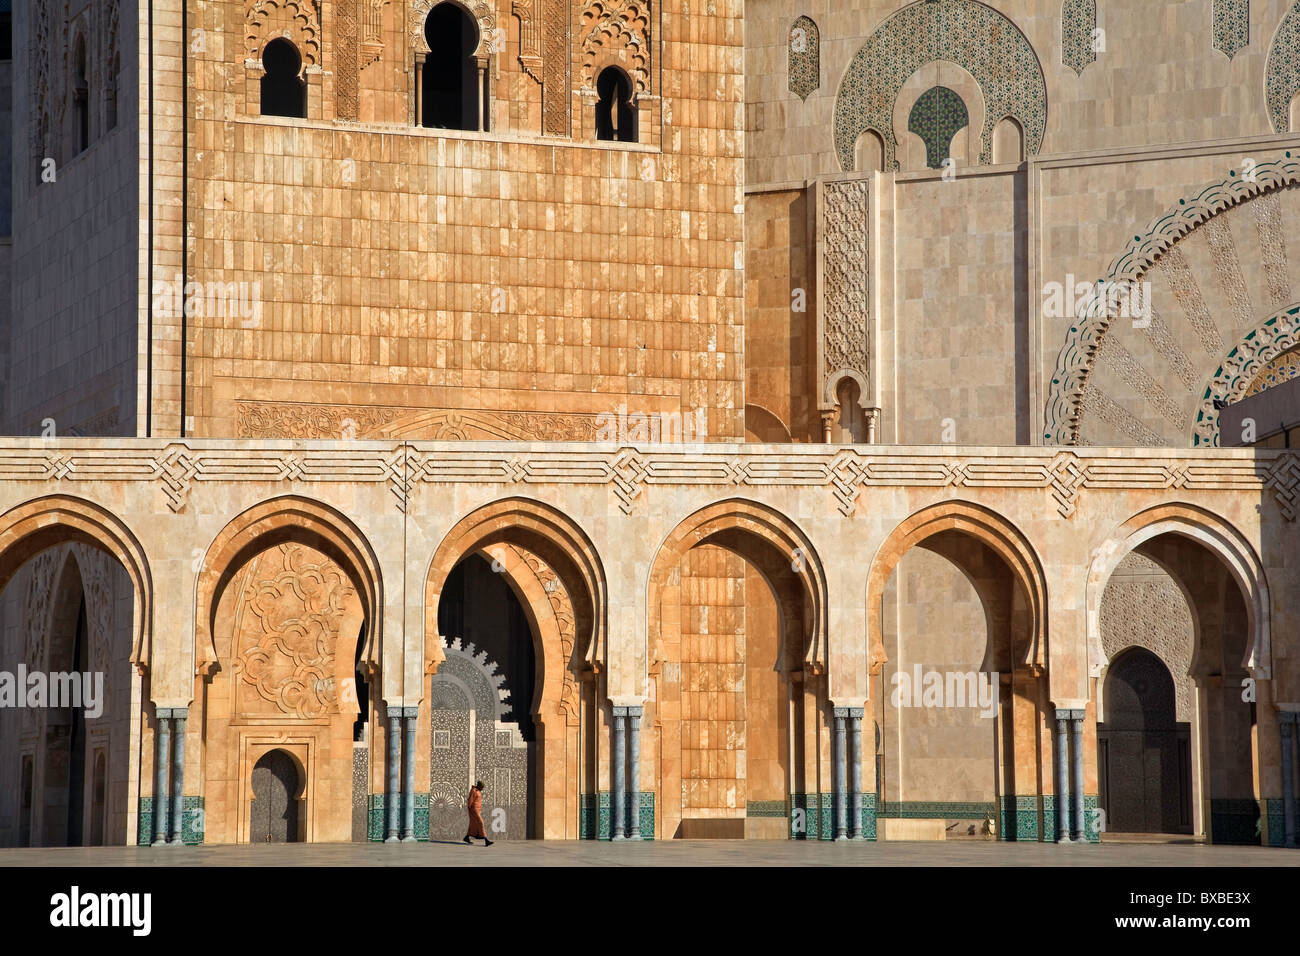 Hassan II Mosque in Casablanca Stock Photo